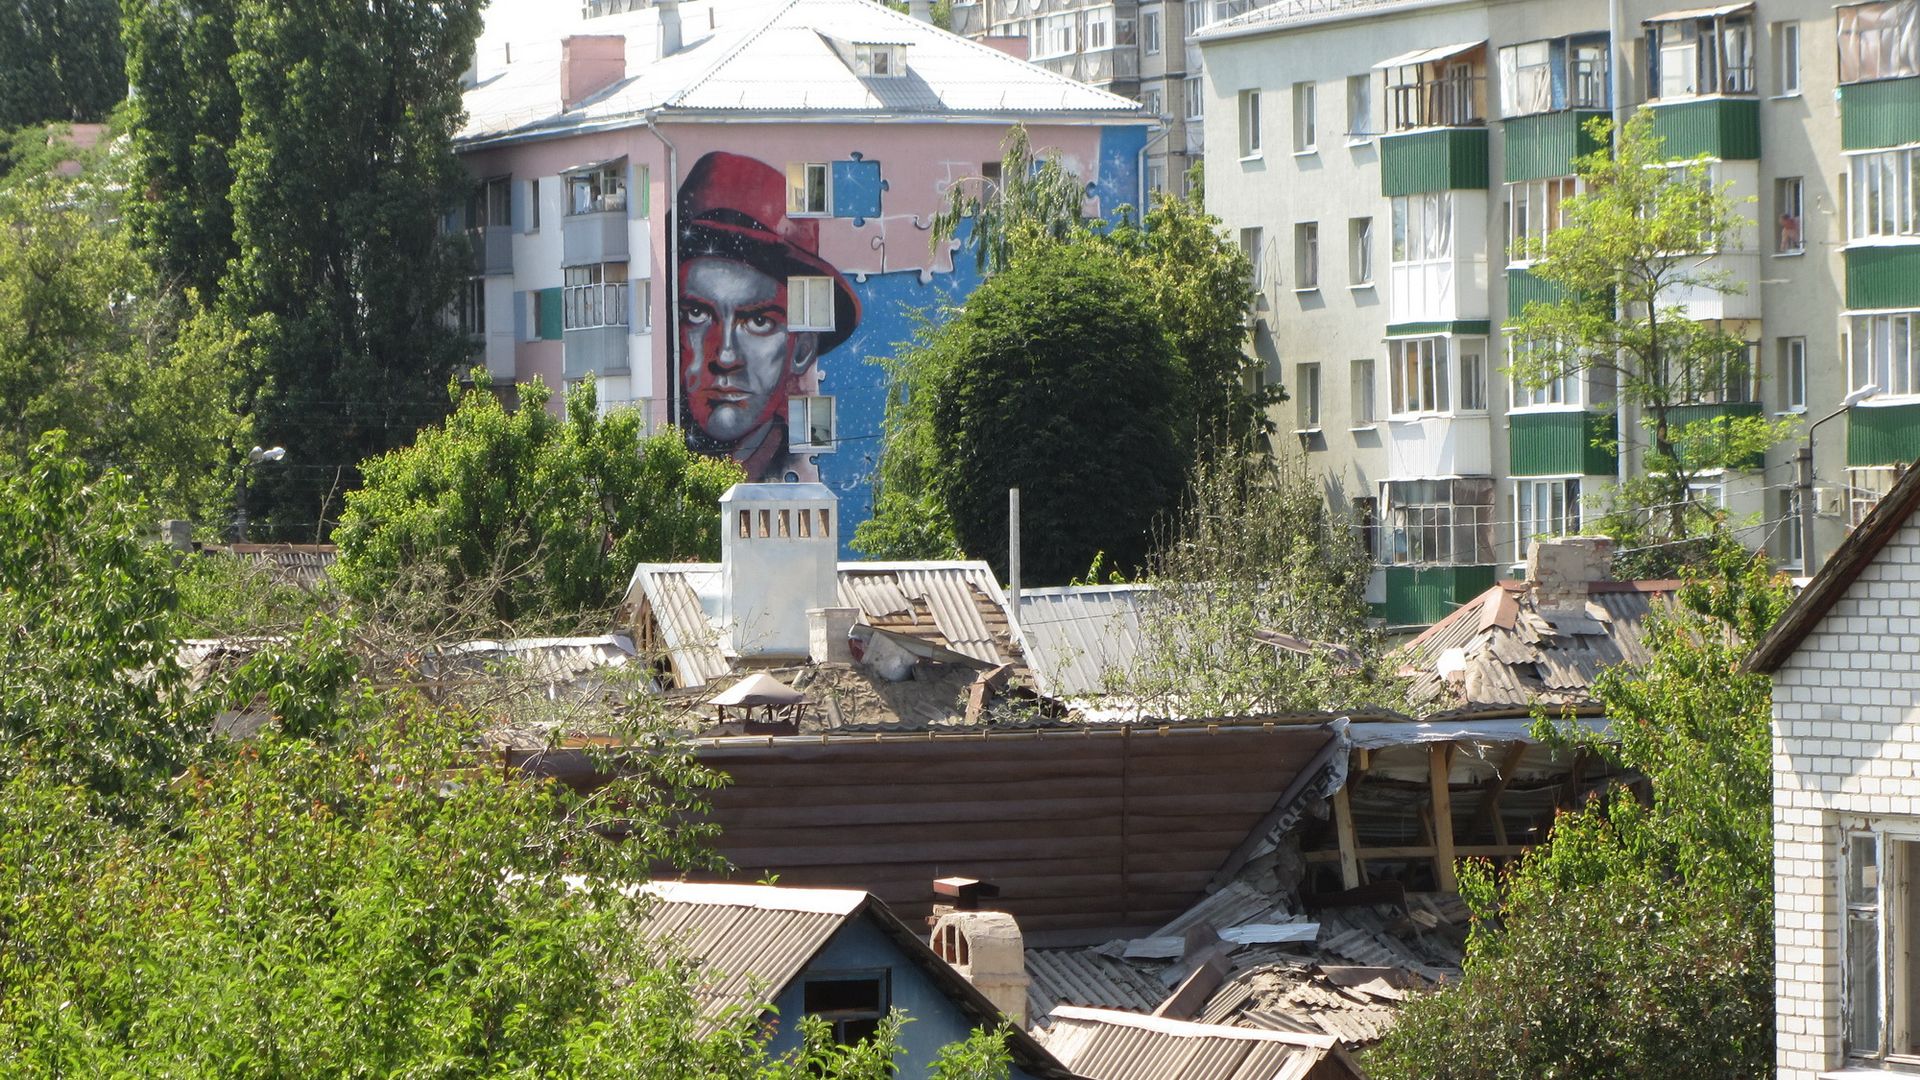 Улица Маяковского, где на одном из домов нарисован мурал с поэтом. Белгород, 03.07.2022 г.